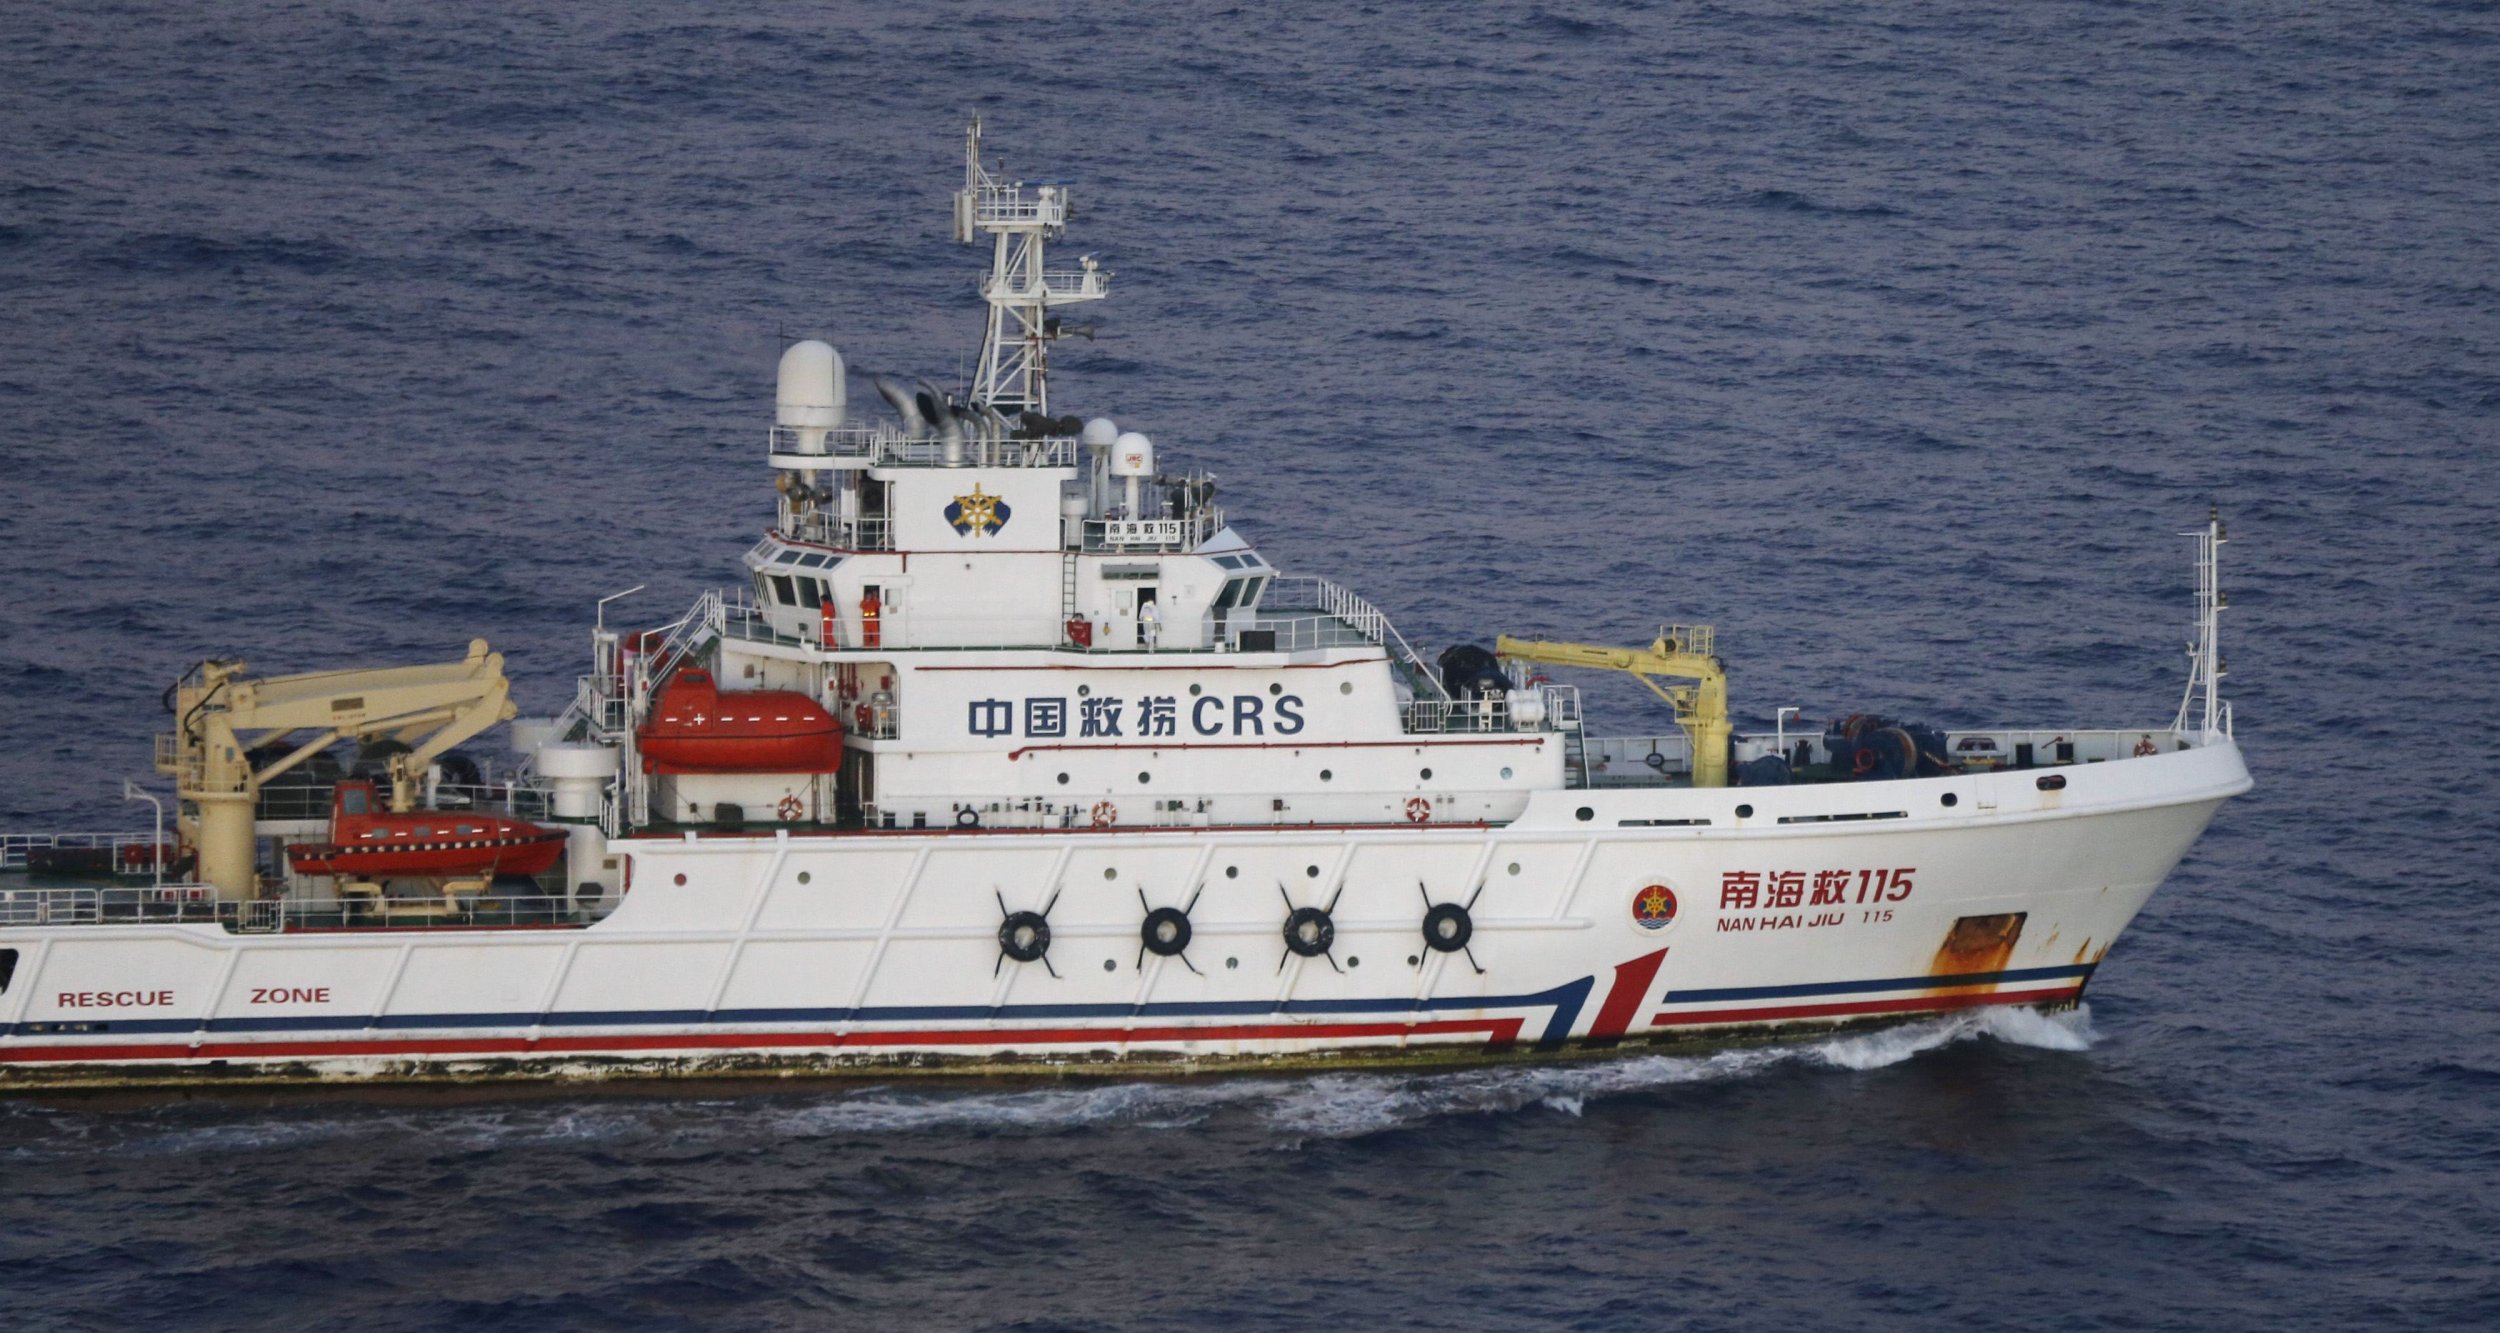 MH370 search Nan Hai Jiu Chinese Ship